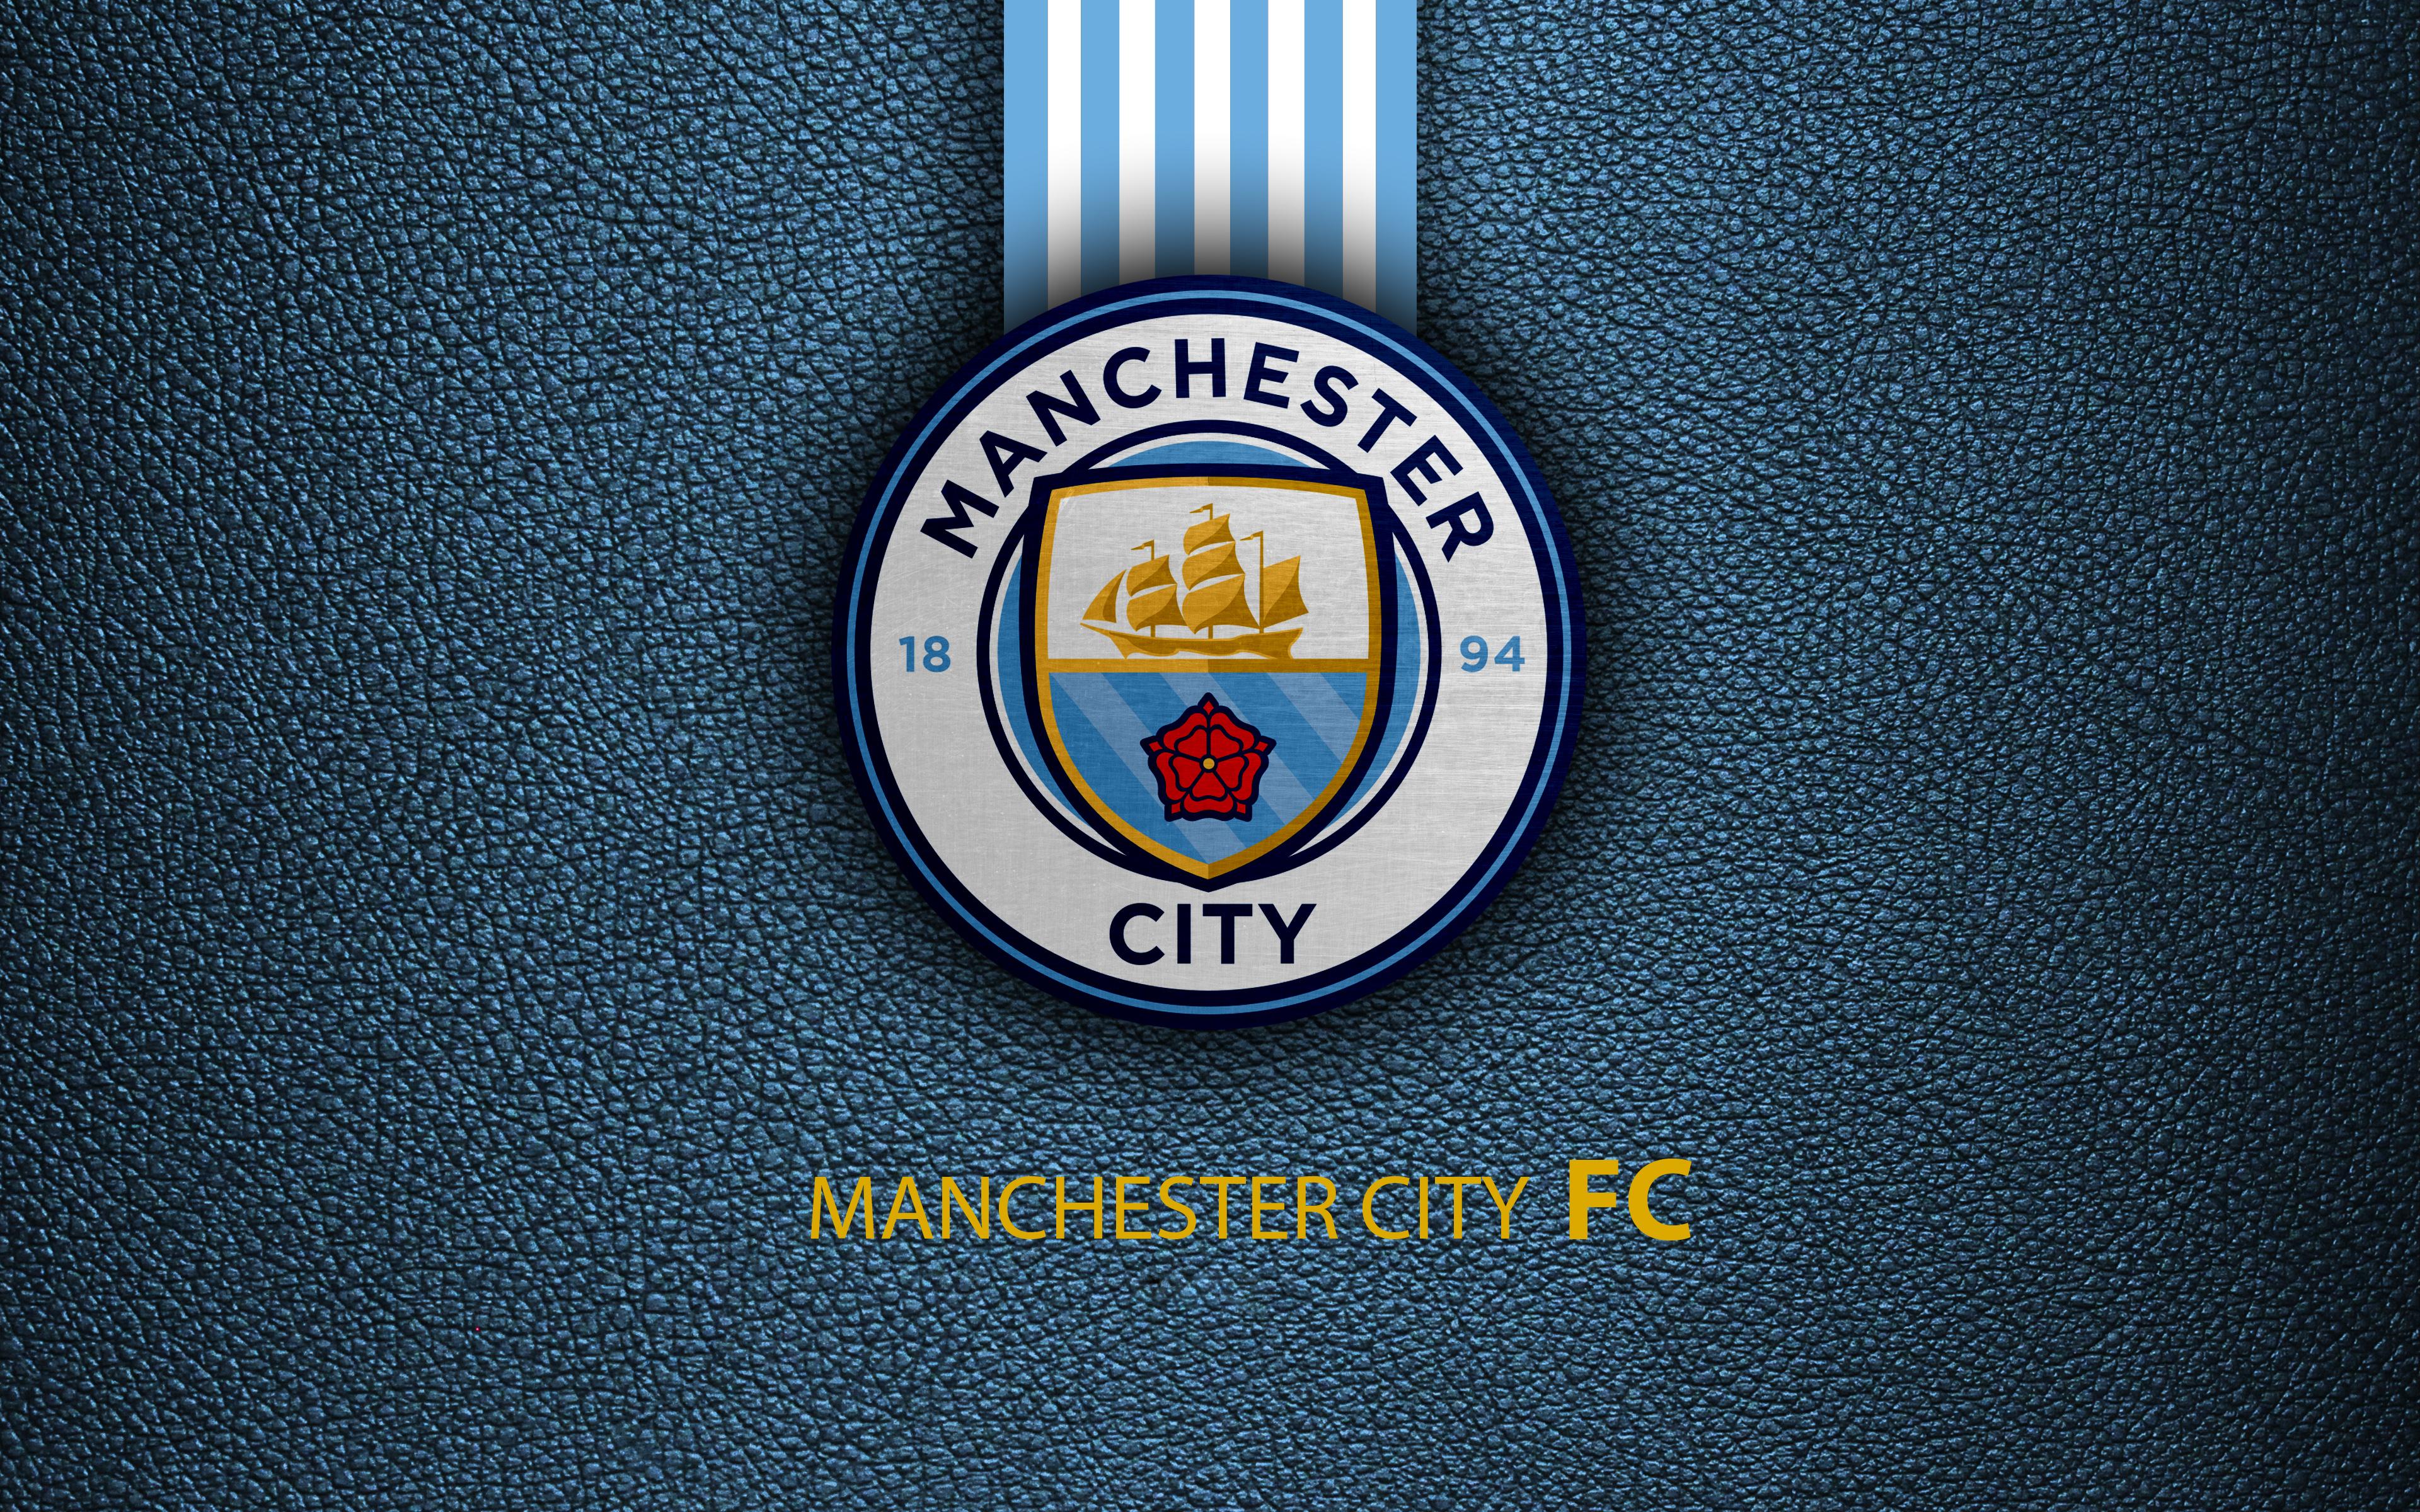 Manchester City Logo 4k Ultra HD .wall.alphacoders.com